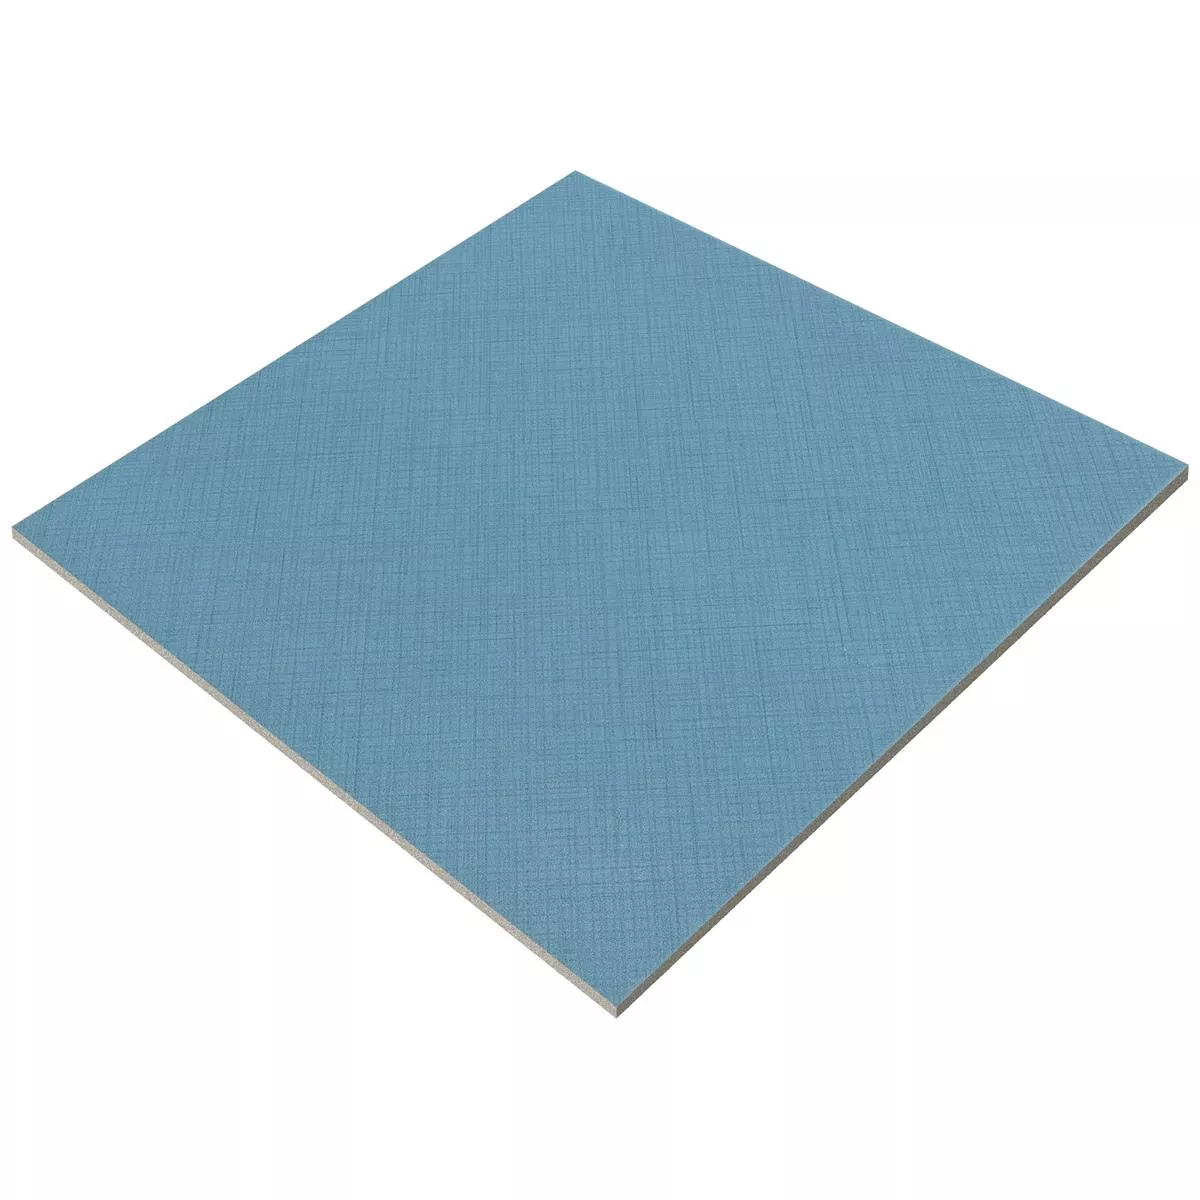 Floor Tiles Cement Optic Wildflower Blue Basic Tile 18,5x18,5cm